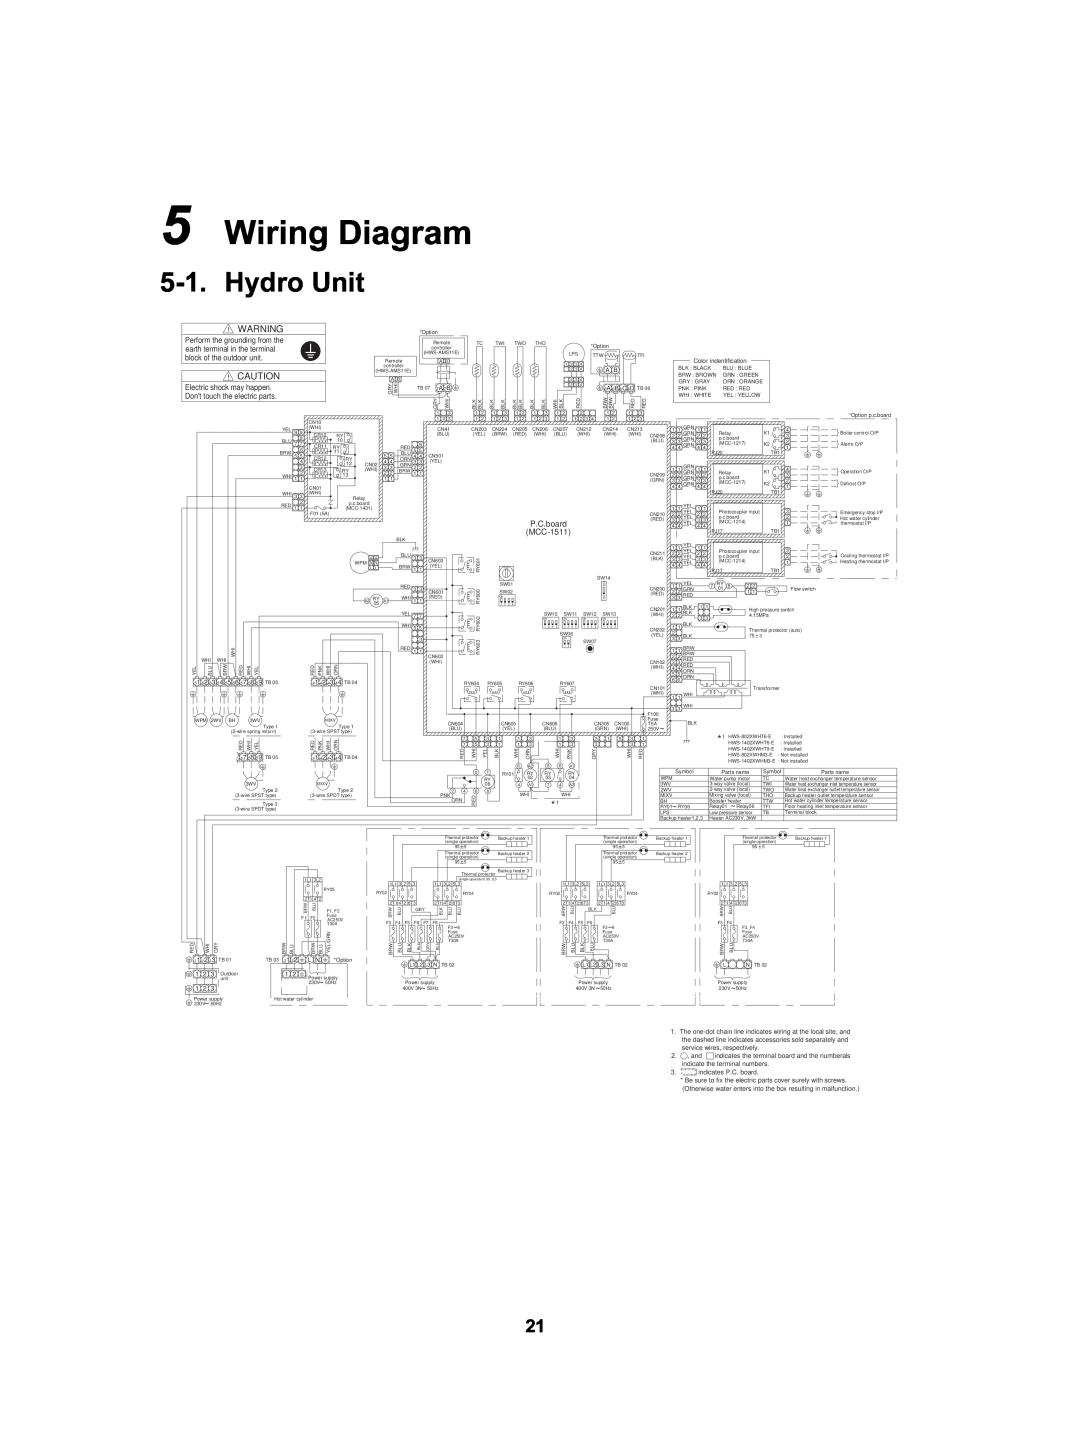 Toshiba HWS-802XWHM3-E Wiring Diagram, Hydro Unit, HWS-1402XWHT9-E, HWS-802XWHT6-E, HWS-1402XWHT6-E, HWS-1402XWHM3-E 